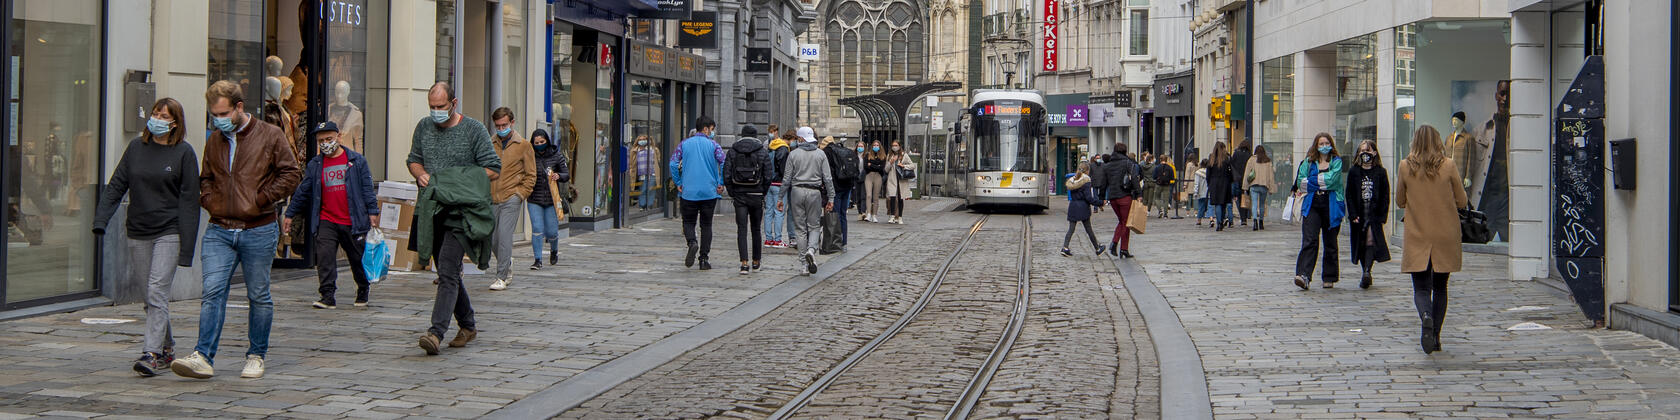 Verschillende mensen lopen door de Veldstraat in Gent, allemaal op veilige afstand van elkaar en met een mondmasker op